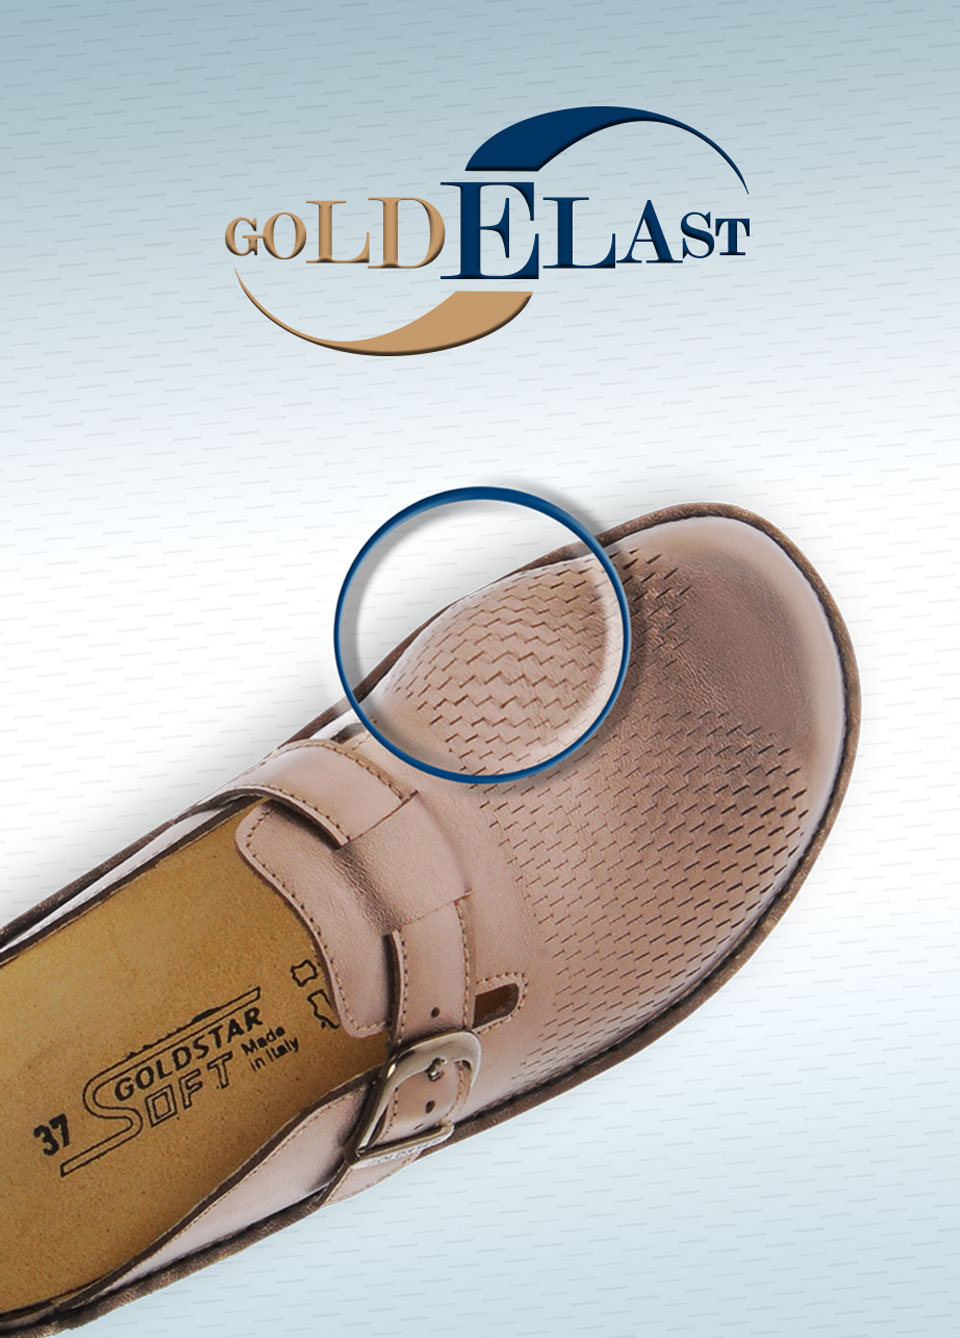 golden-elast